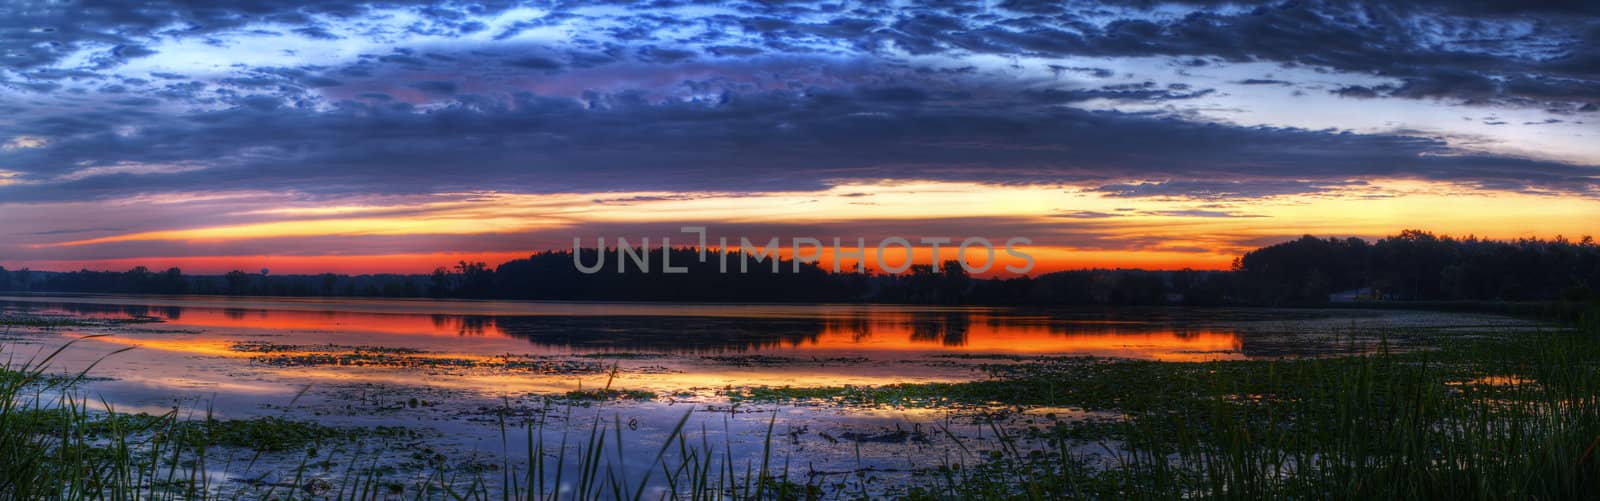 Panorama of a beautiful sunrise on a lake.